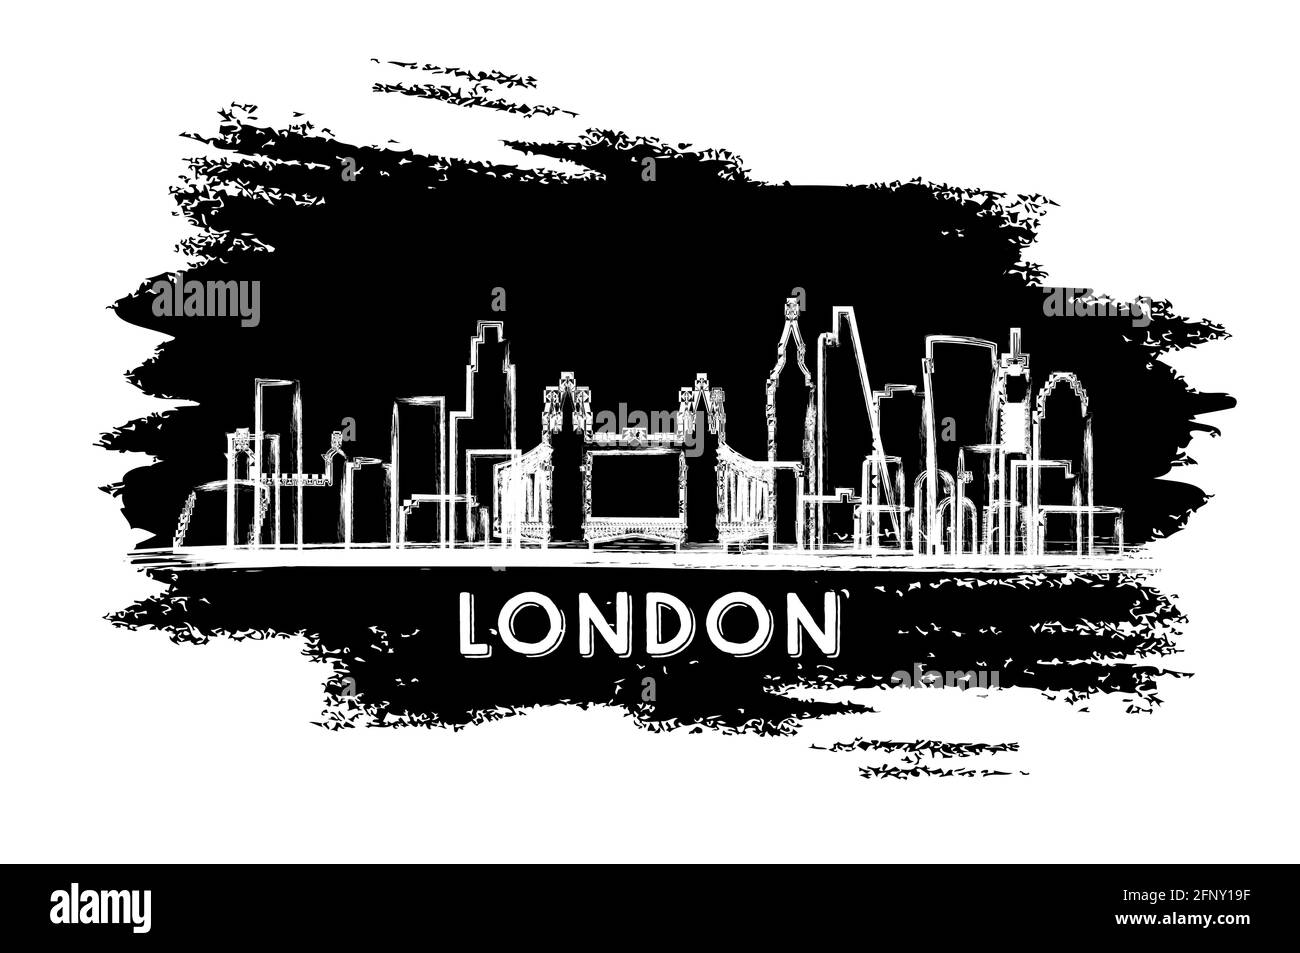 London City Skyline Silhouette. Handgezeichnete Skizze. Business Travel und Tourismus Konzept mit historischer Architektur. Vektorgrafik. London City Stock Vektor